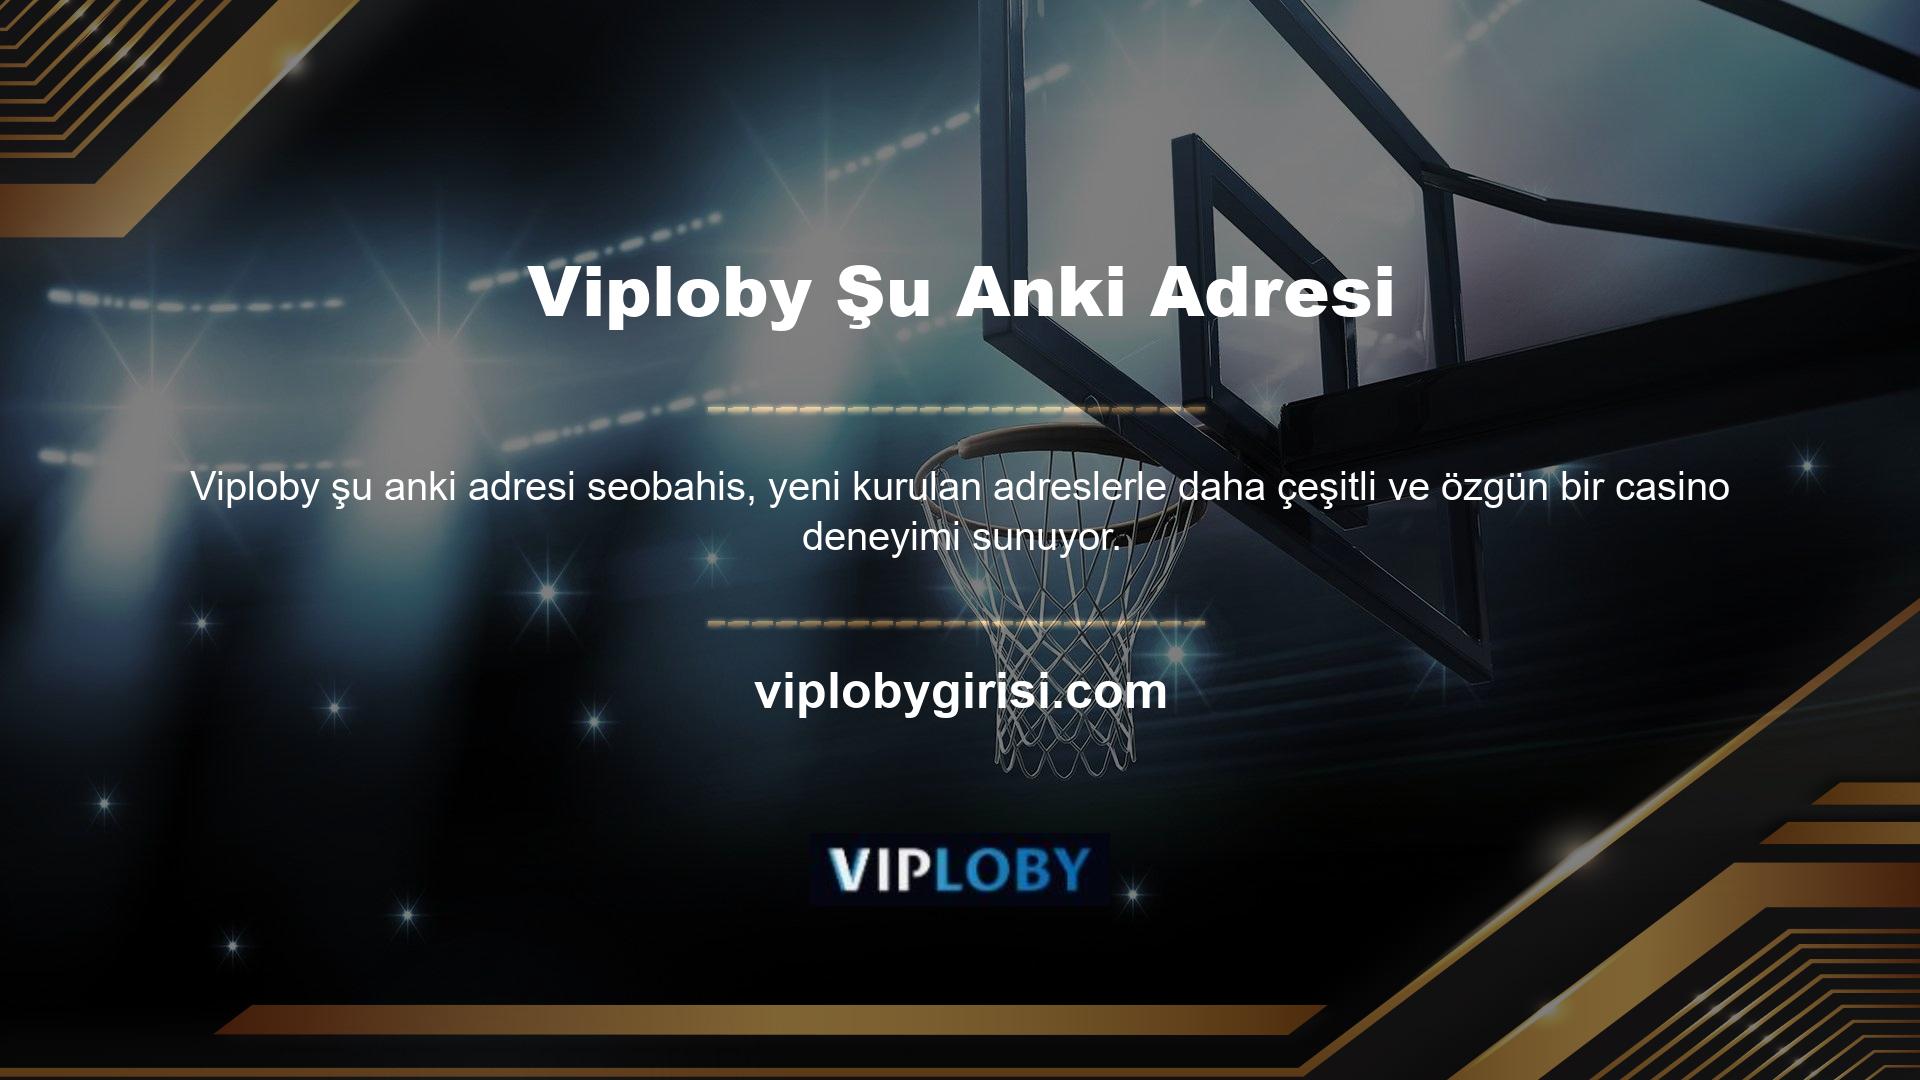 Sitenin adresi değiştirildi ve Viploby adresine artık erişilemiyor